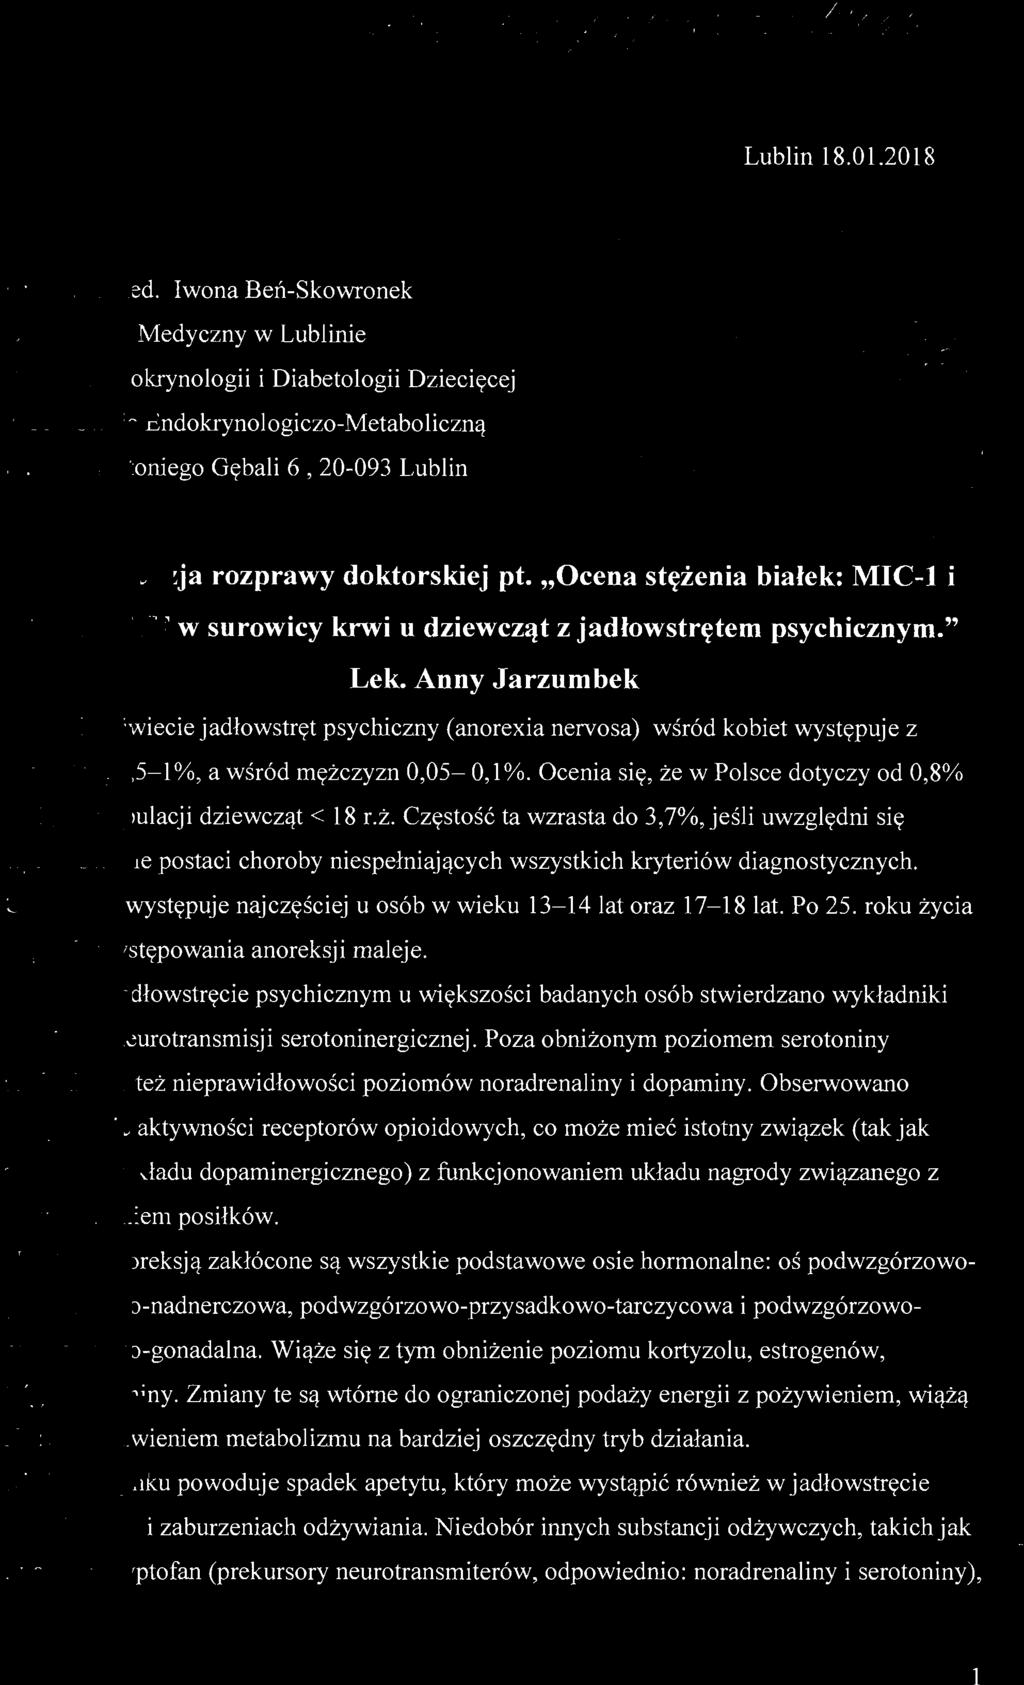 Anny Jarzumbek Na świecie jadłowstręt psychiczny (anorexia nervosa) wśród kobiet występuje z częstością 0,5-1 %, a wśród mężczyzn 0,05-0,1%.